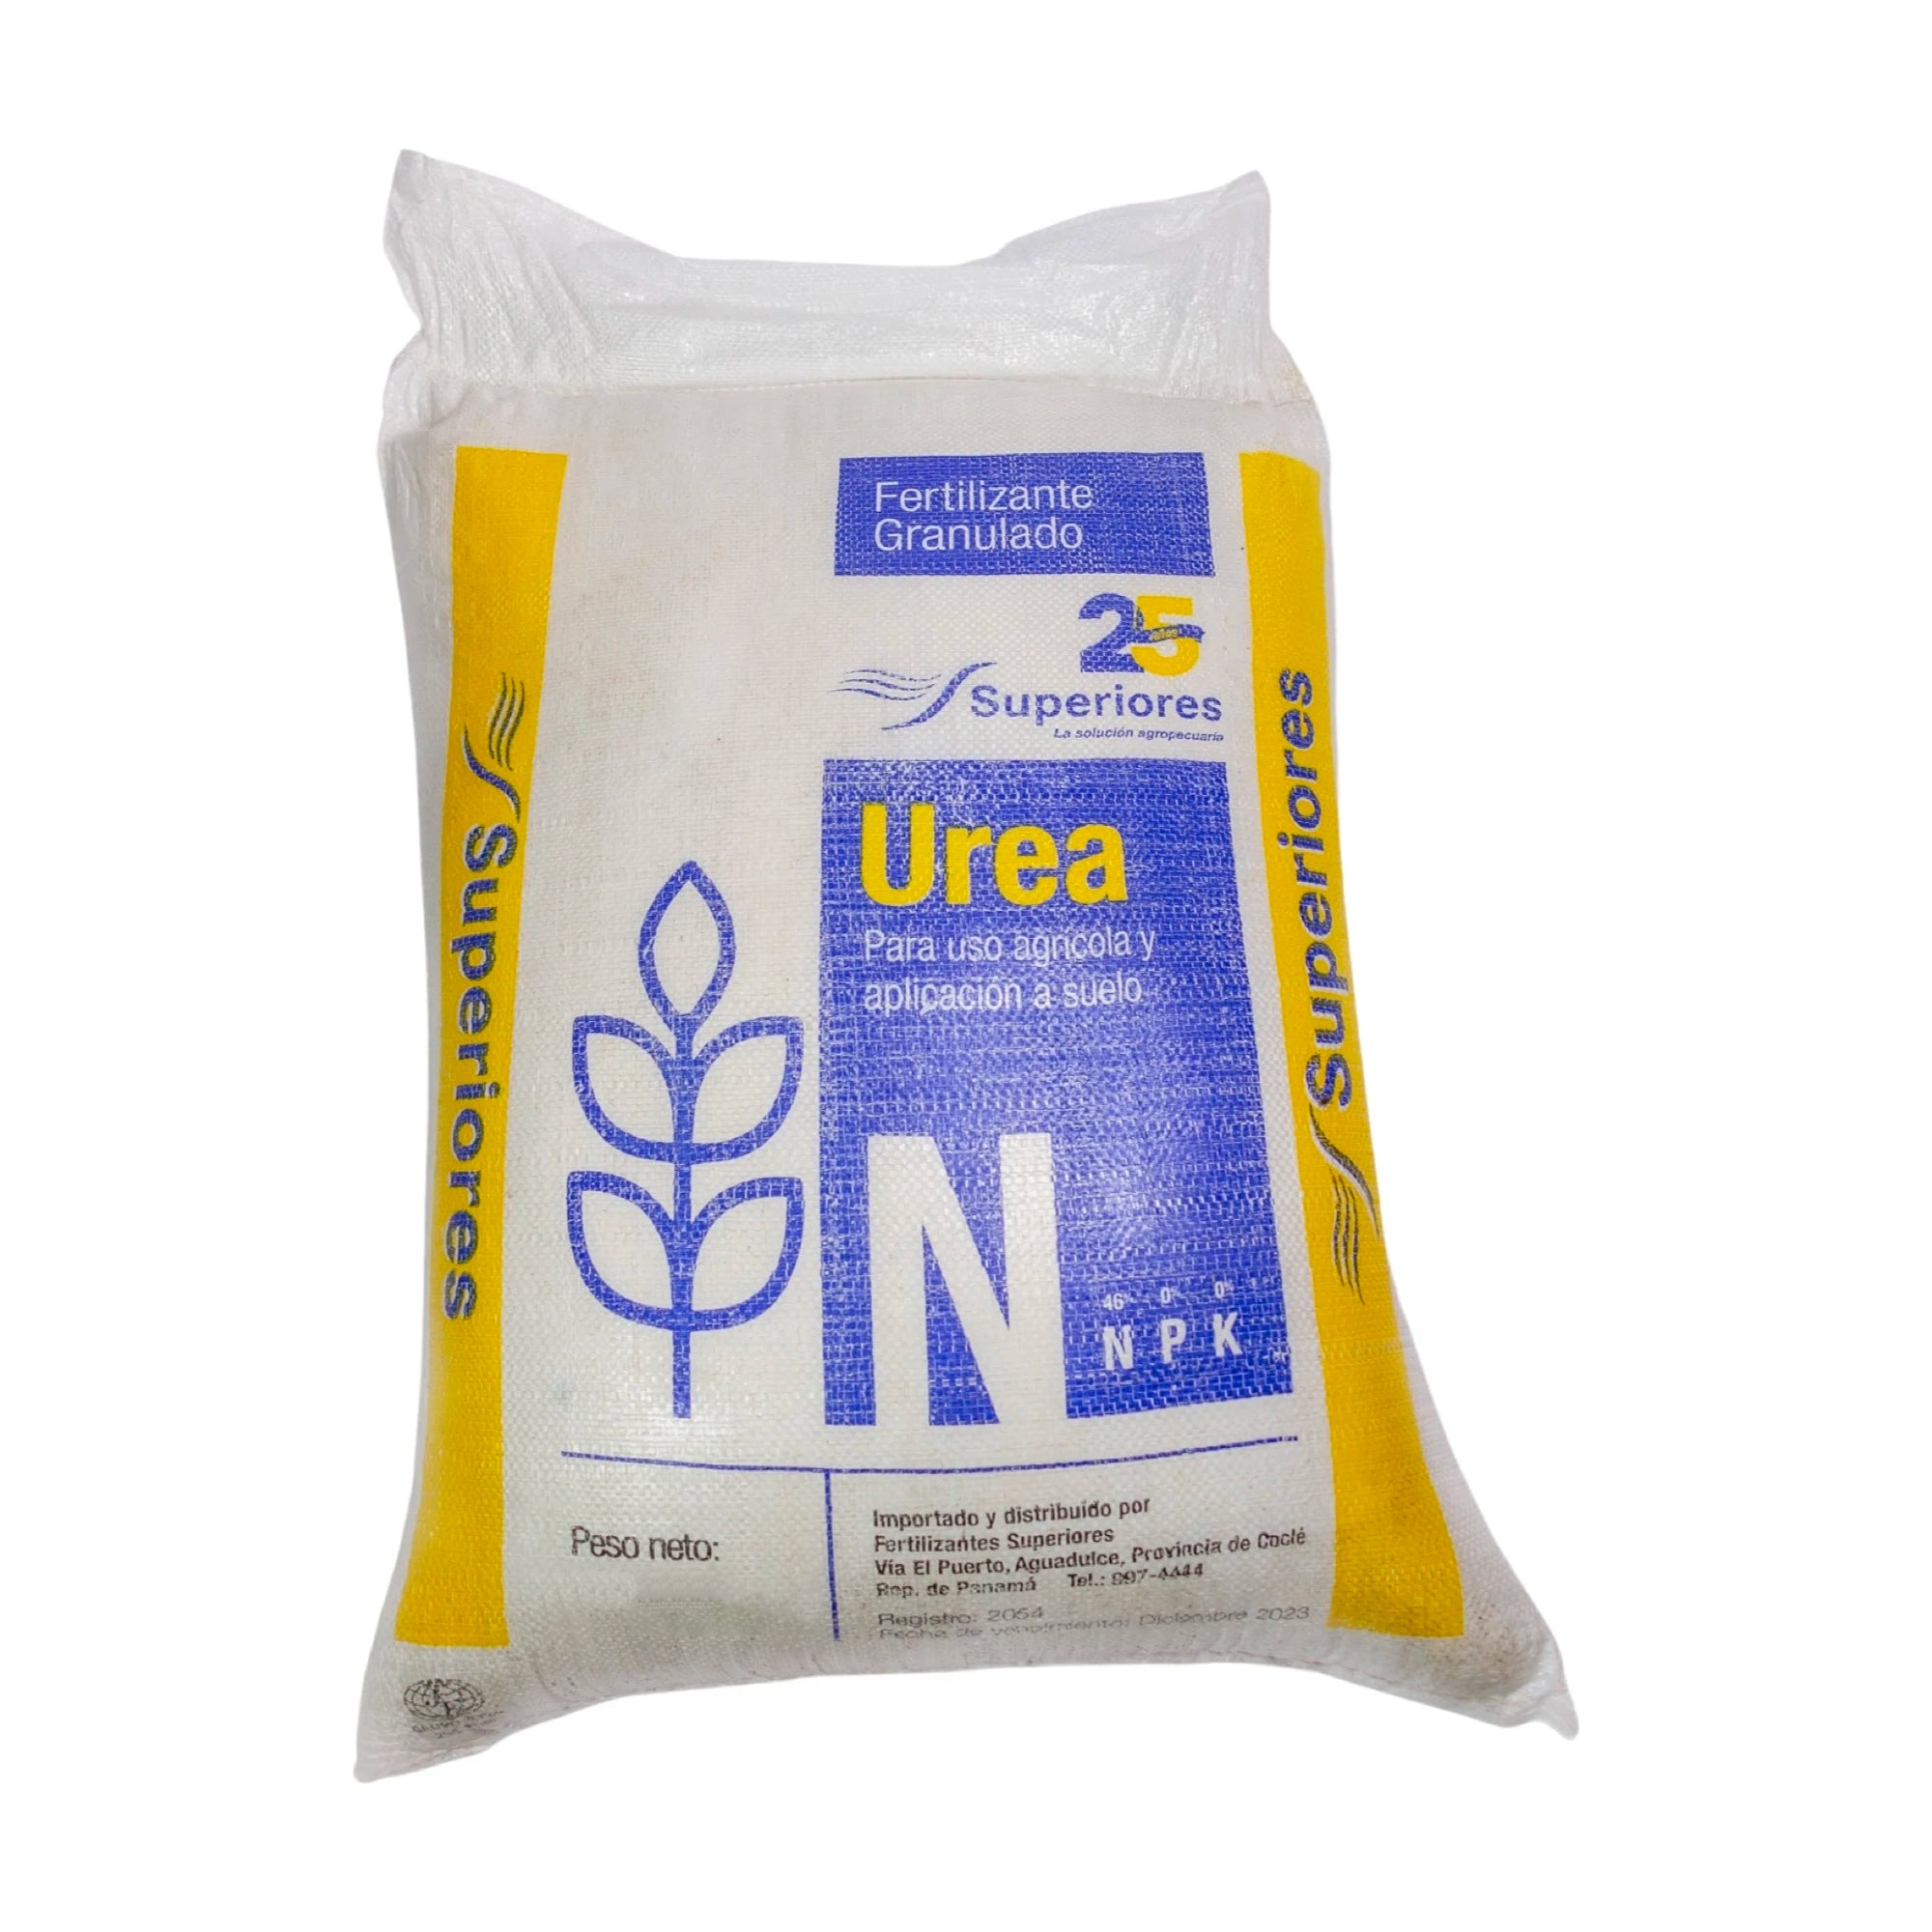 Urea 46% 11.35 Kg (25lbs) Fertilizantes Superiores